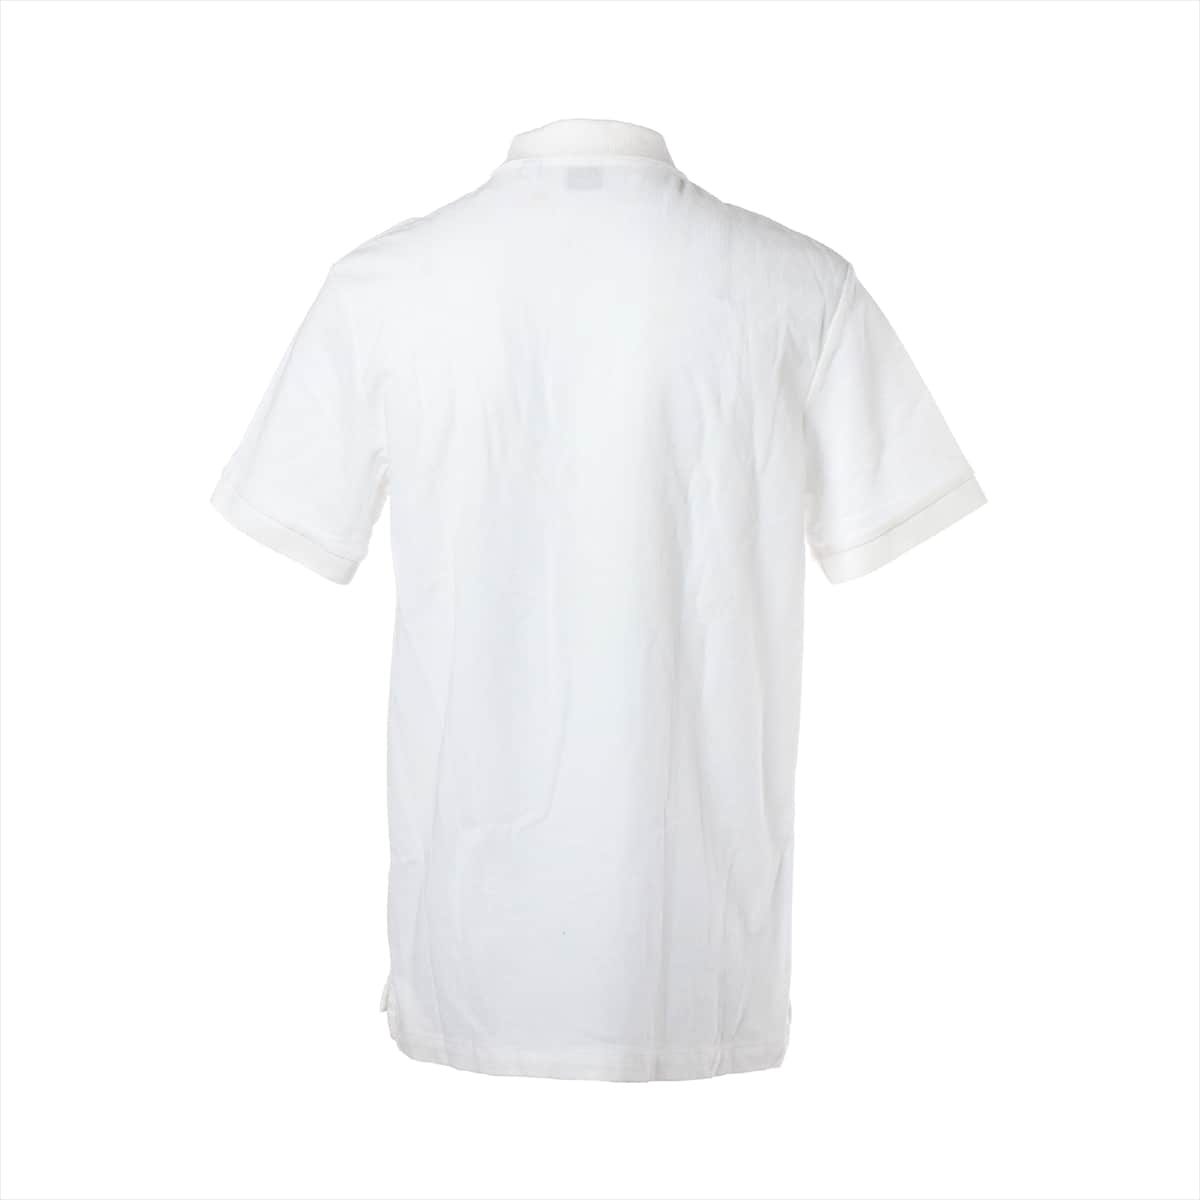 バーバリー ティッシ期 コットン ポロシャツ M メンズ ホワイト   8014005 TBロゴ